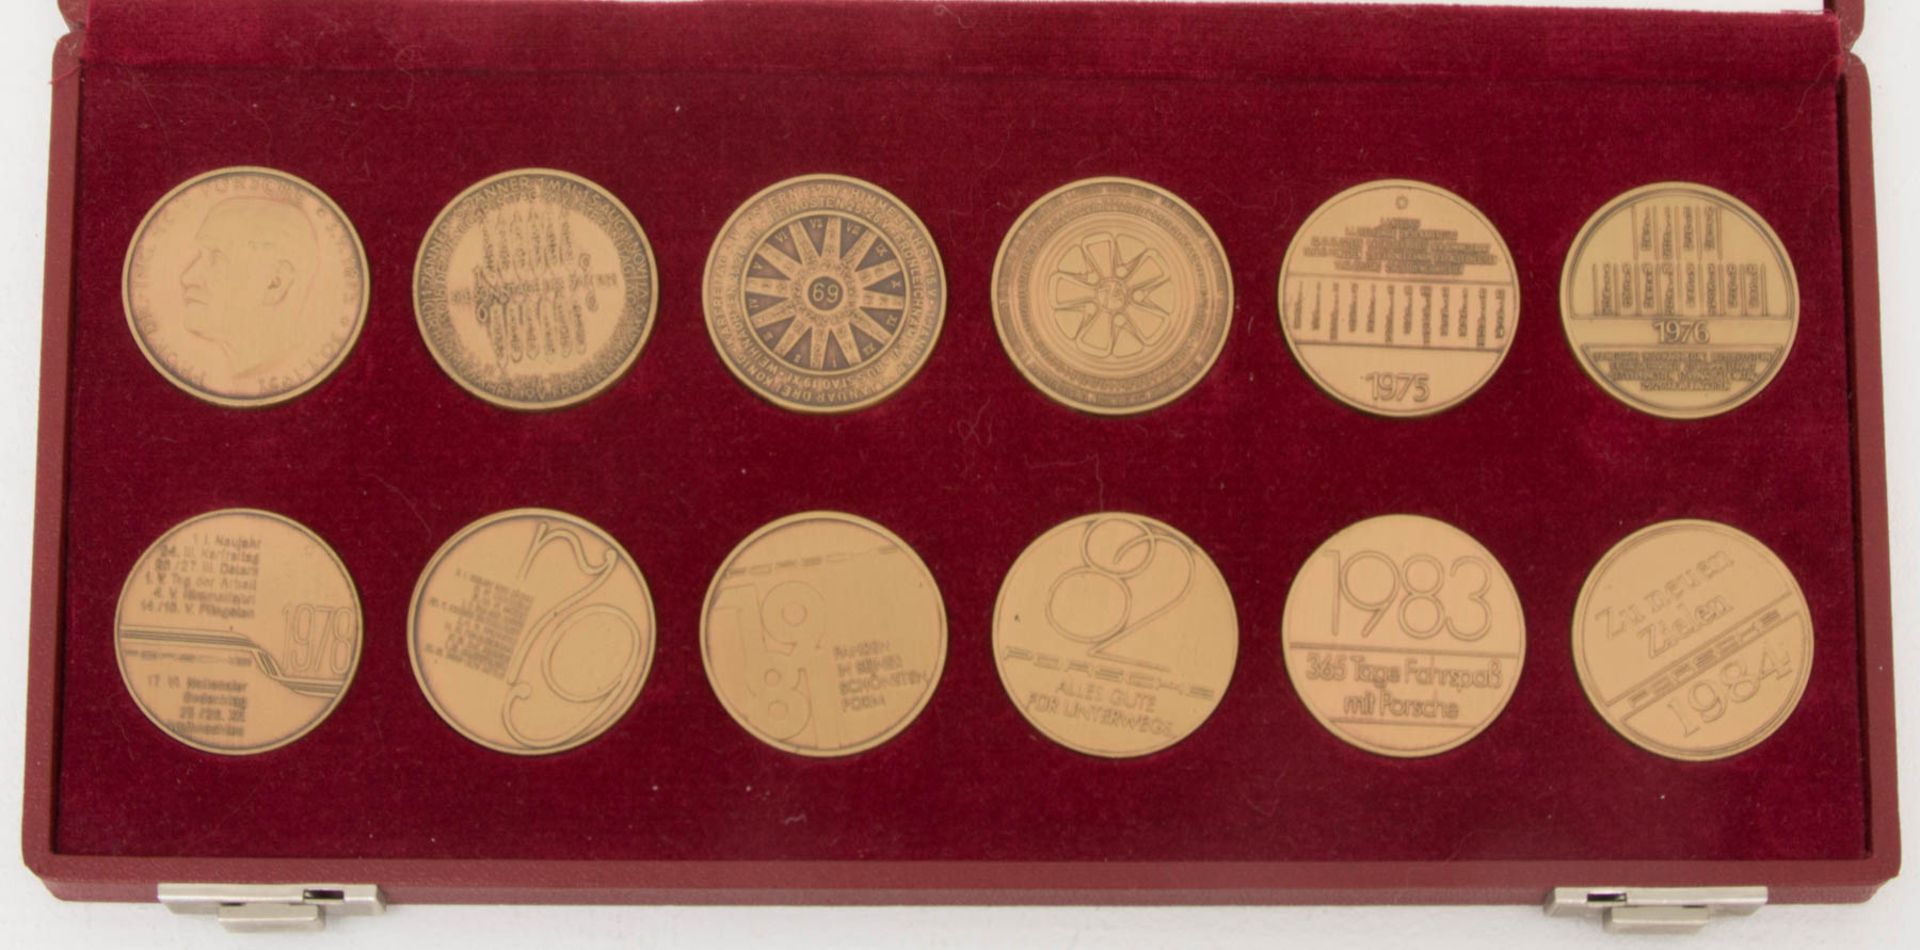 Porsche Medaillen in drei Kästen.In Original Kasten und sehr gutem Zustand erhalten. - Bild 3 aus 4